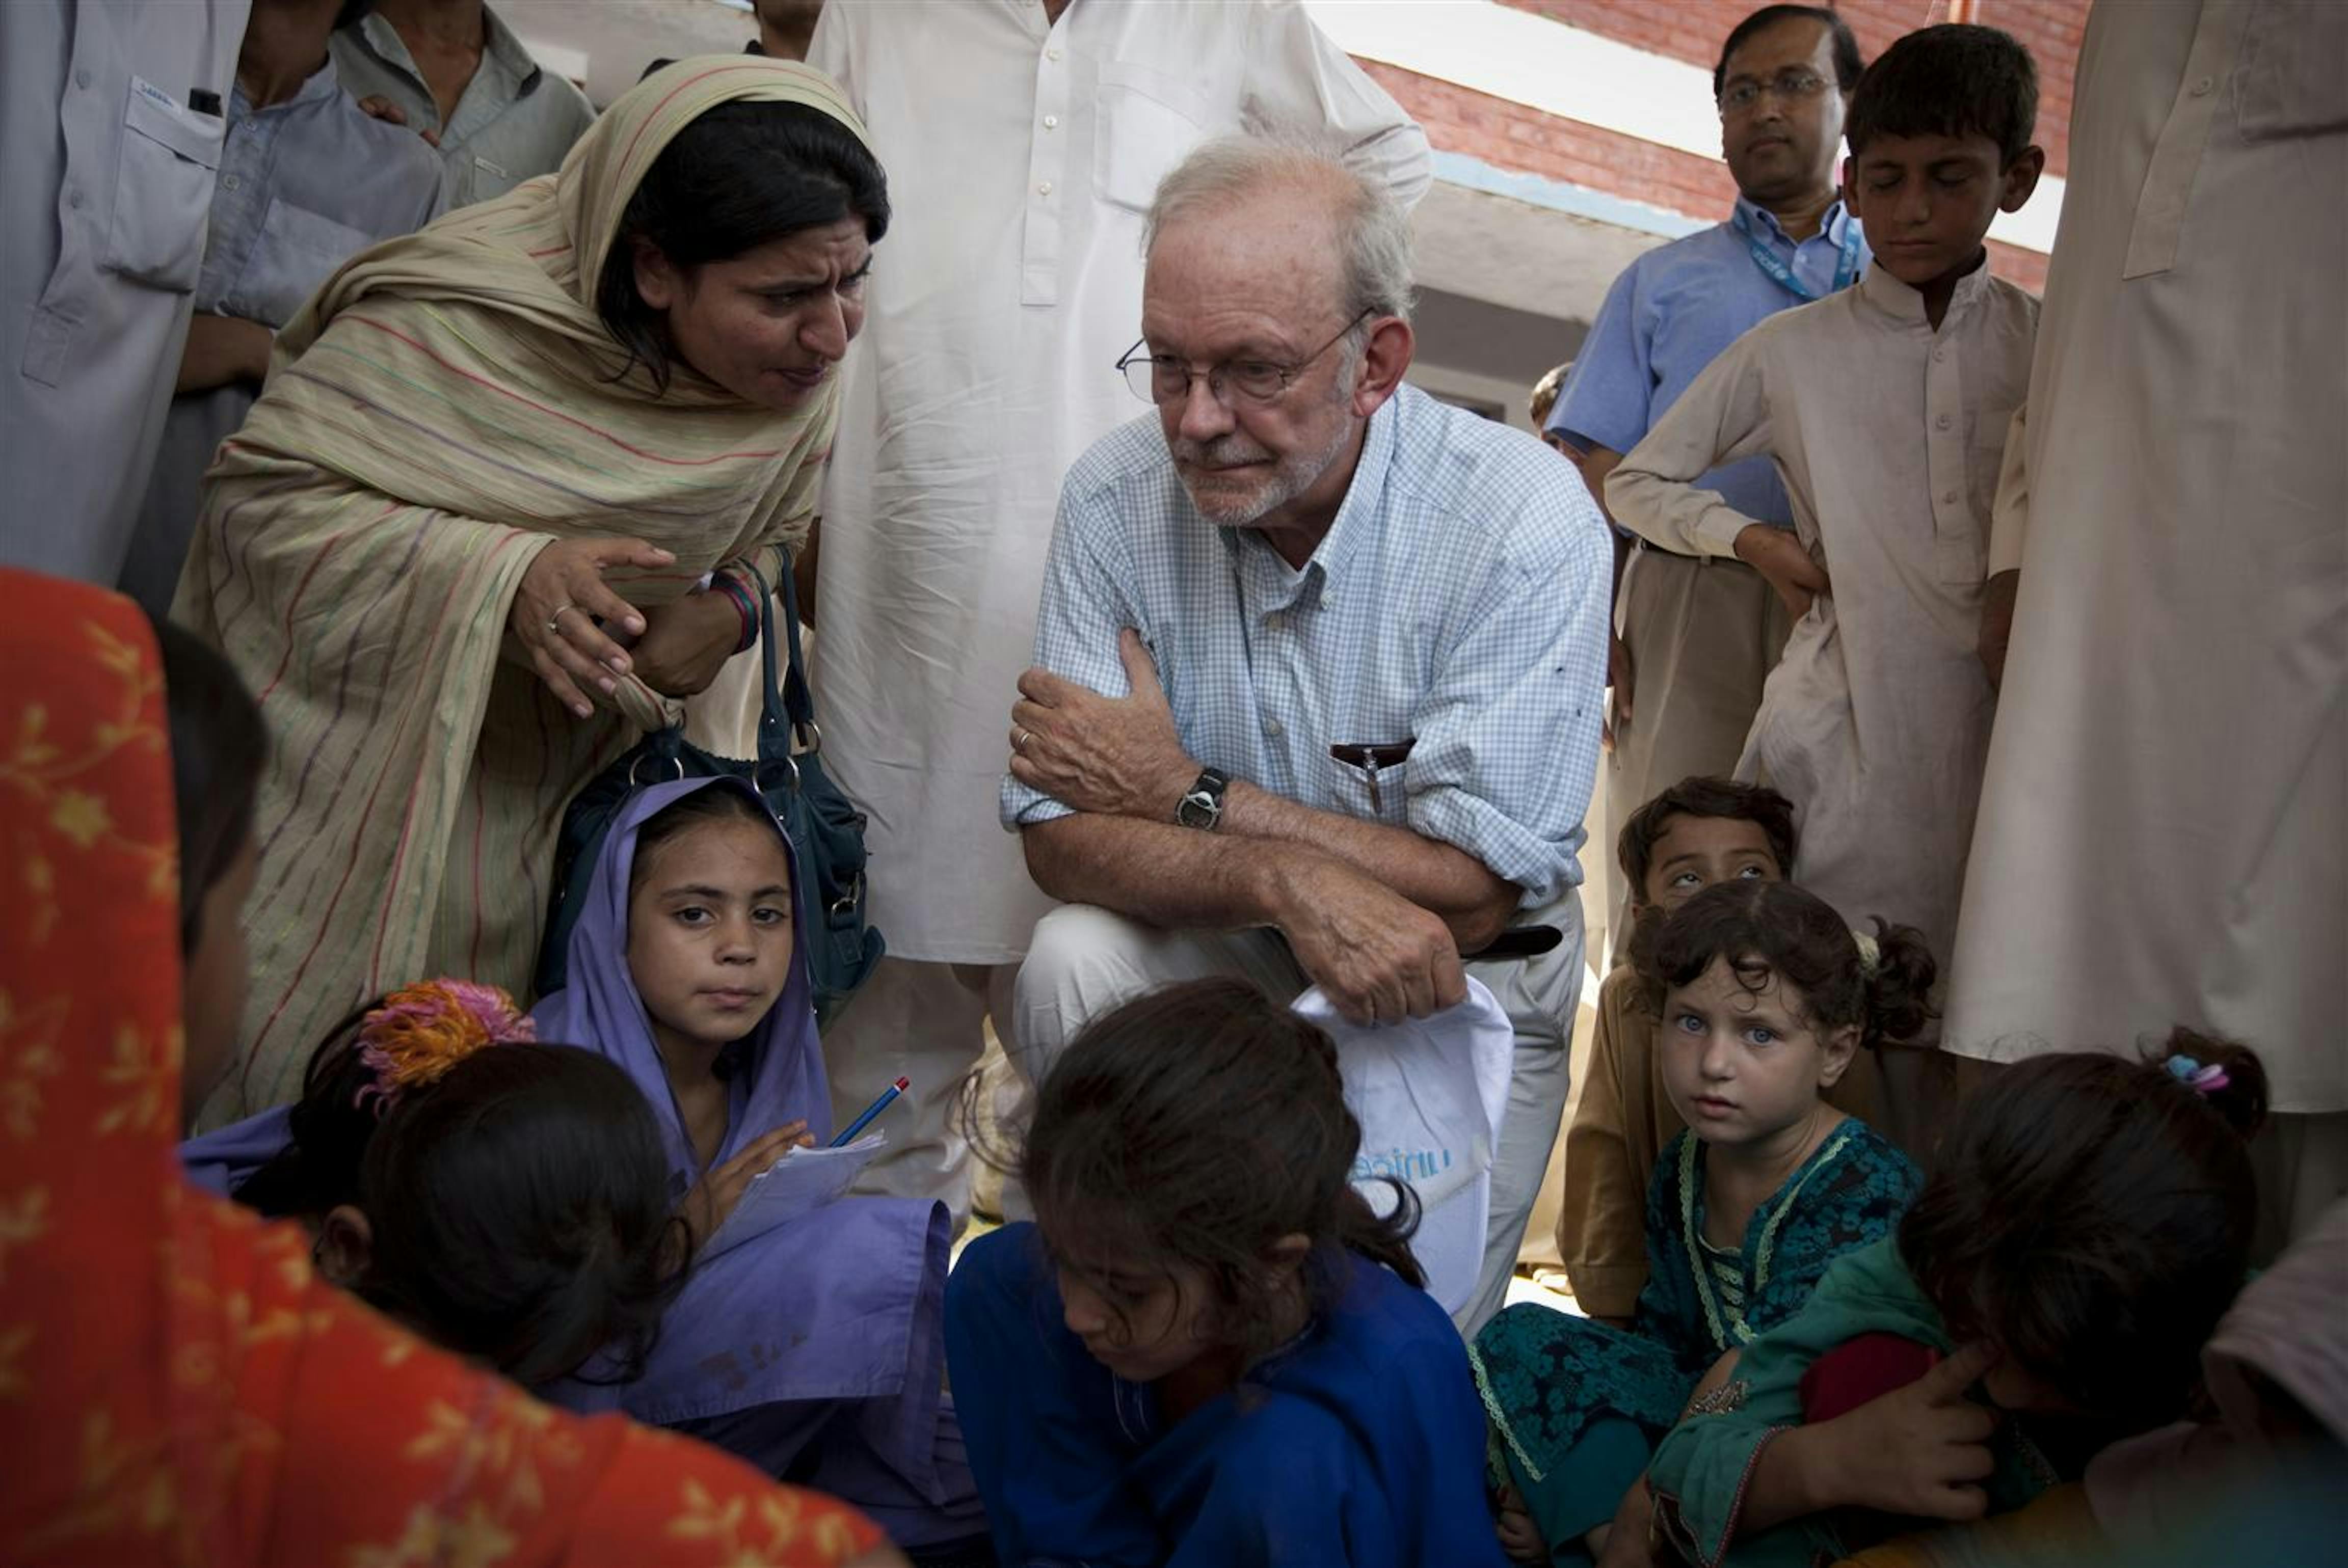 Il direttore UNICEF Anthony Lake incontra gli sfollati in una scuola del distretto di Charsadda, nel Pakistan settentrionale - ©UNICEF/NYHQ2010-1645/M.Ramoneda